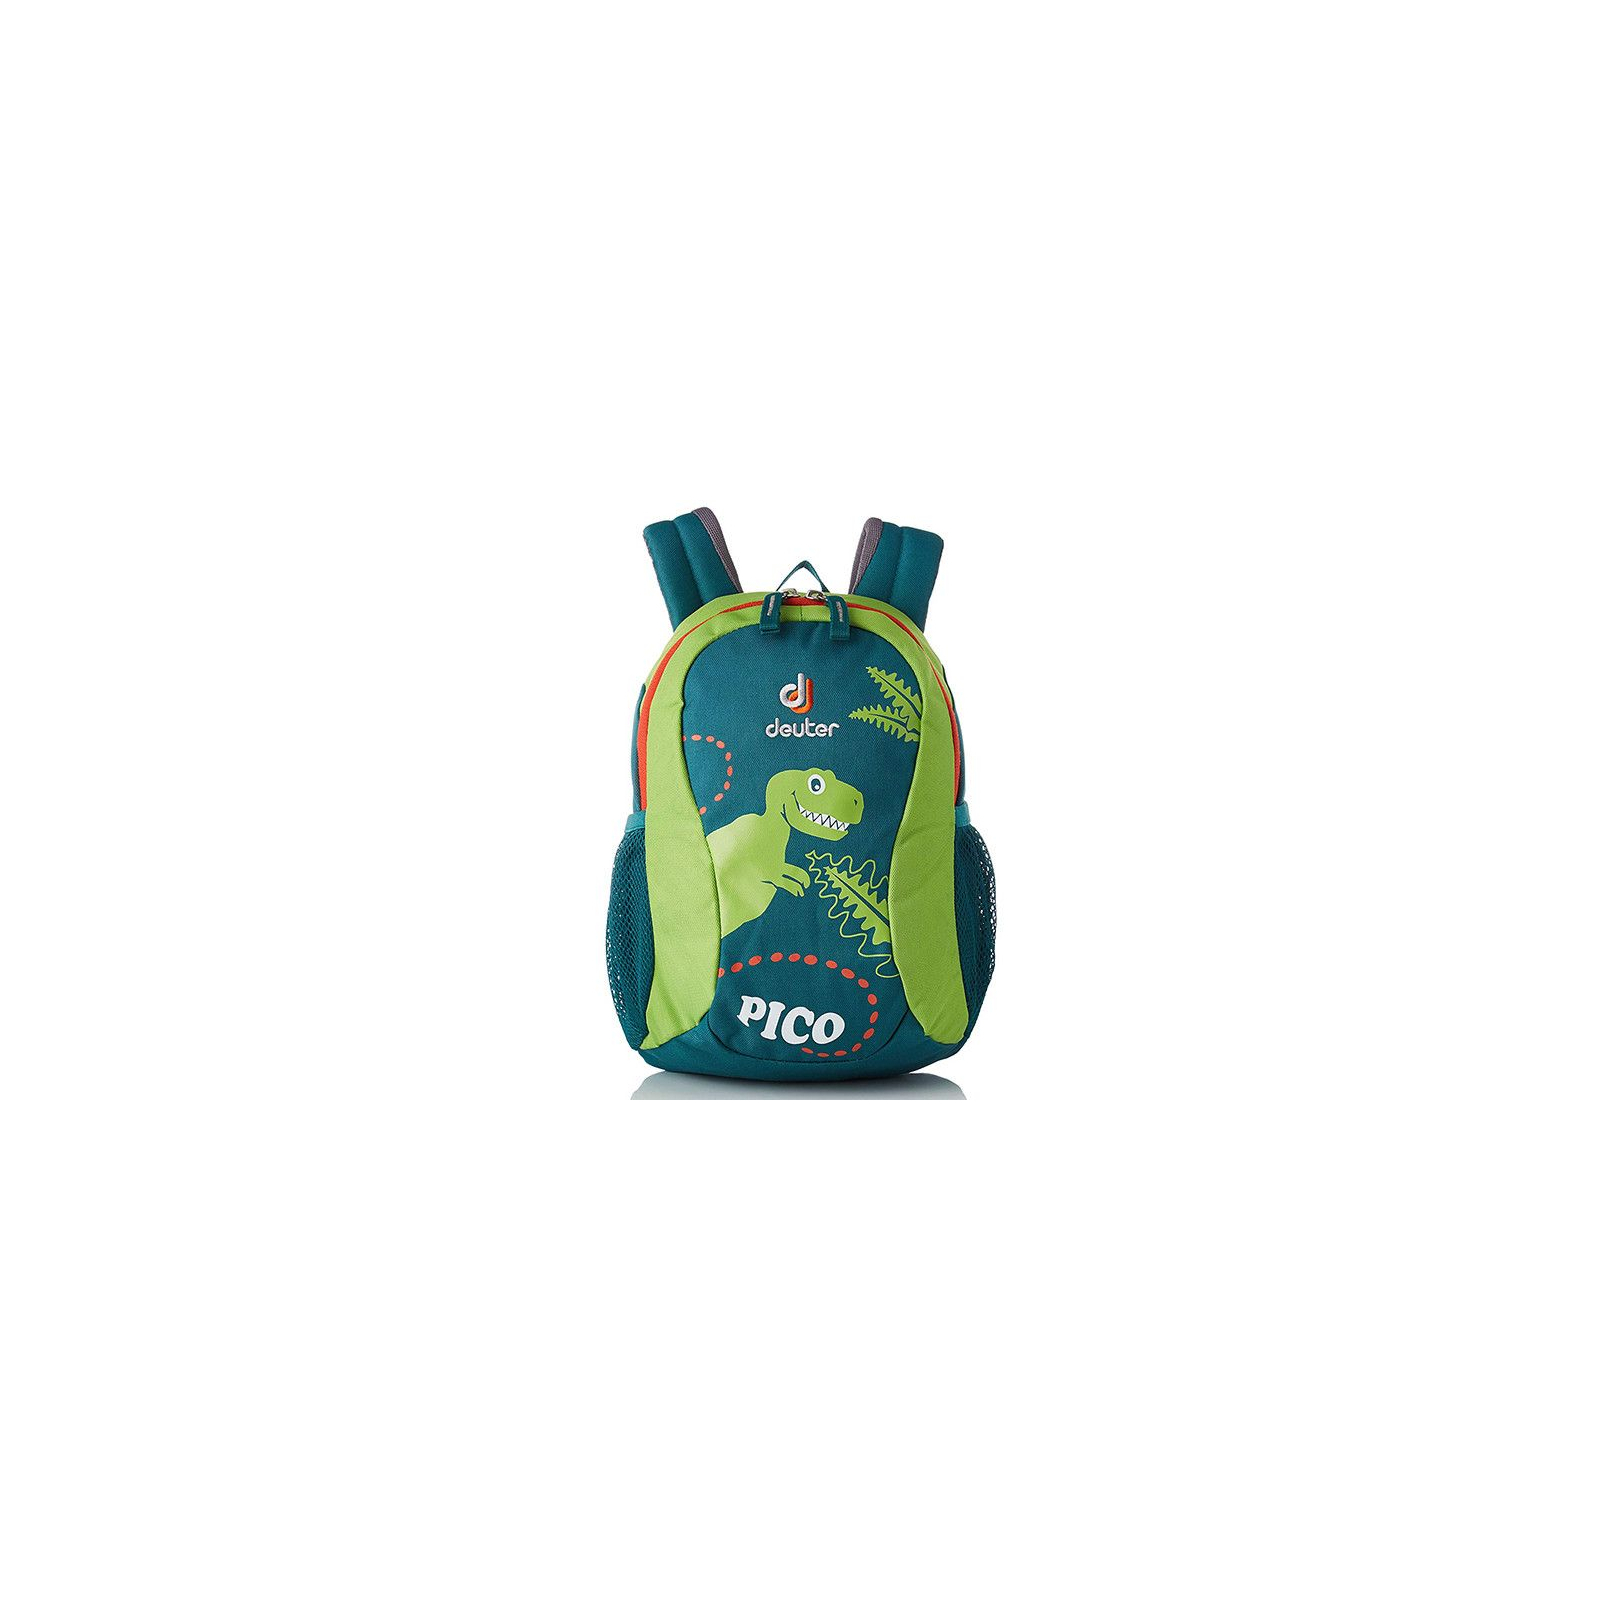 Рюкзак школьный Deuter Pico 2234 alpinegreen-kiwi (36043 2234) изображение 2